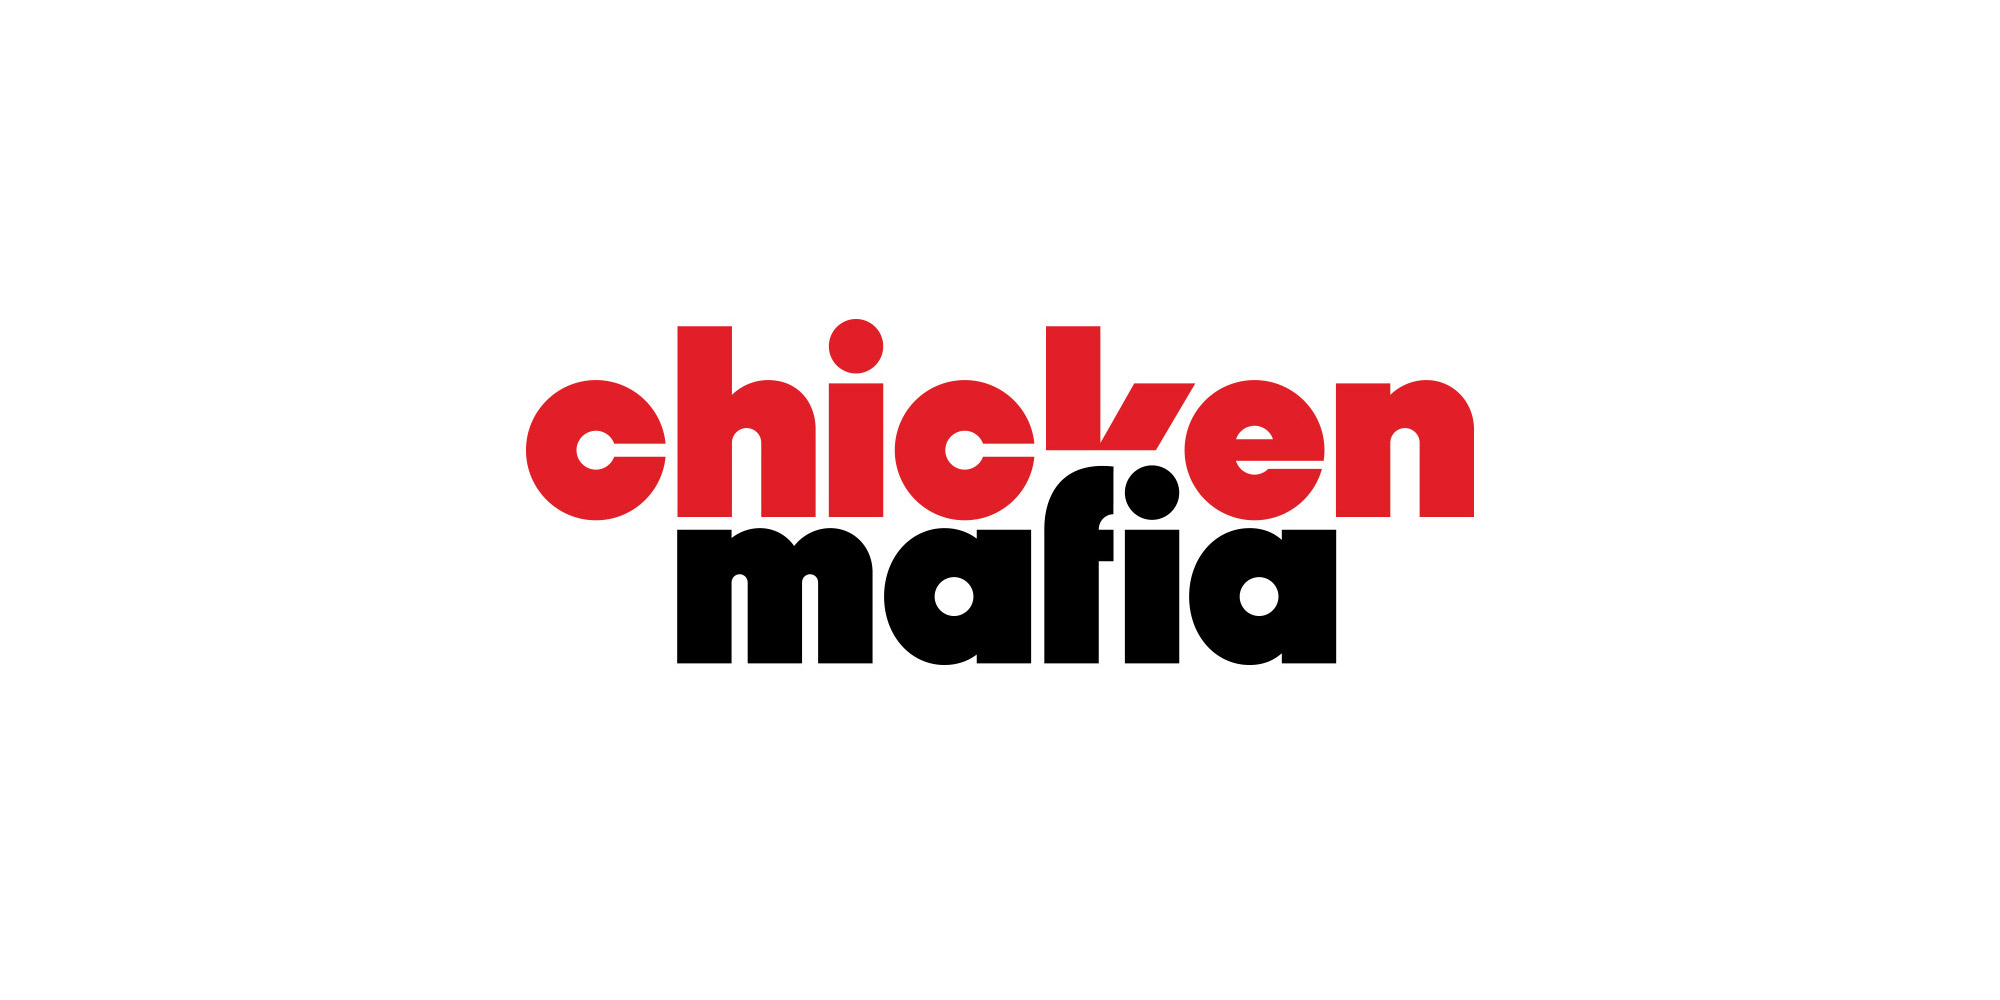 Chicken Mafia Restaurant Brand Identity by Eugene Wisotow & Lesha Limonov